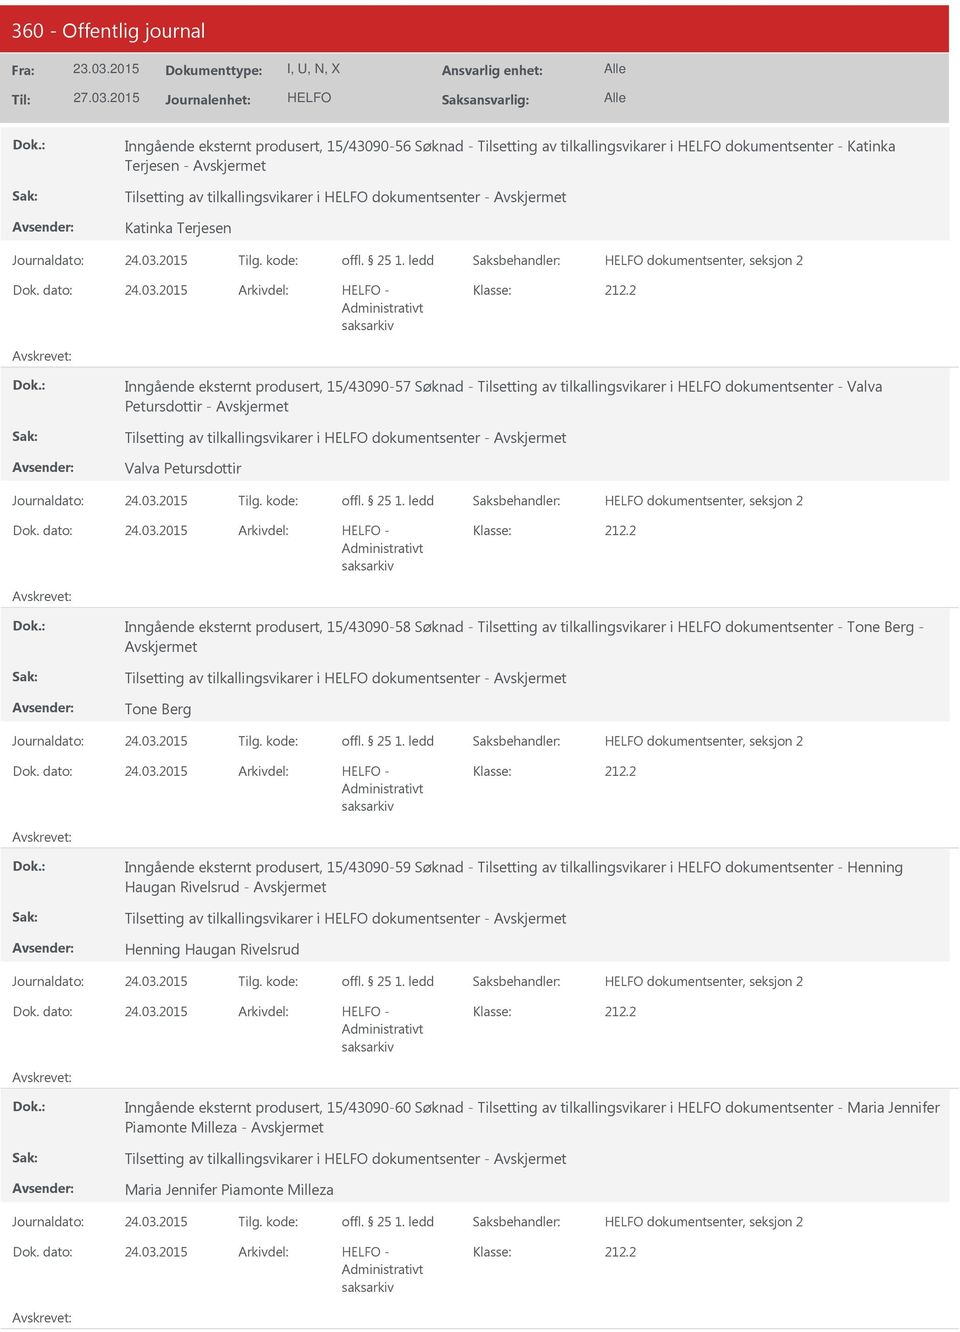 2015 - Inngående eksternt produsert, 15/43090-57 Søknad - Tilsetting av tilkallingsvikarer i dokumentsenter - Valva Petursdottir - Tilsetting av tilkallingsvikarer i dokumentsenter - Valva